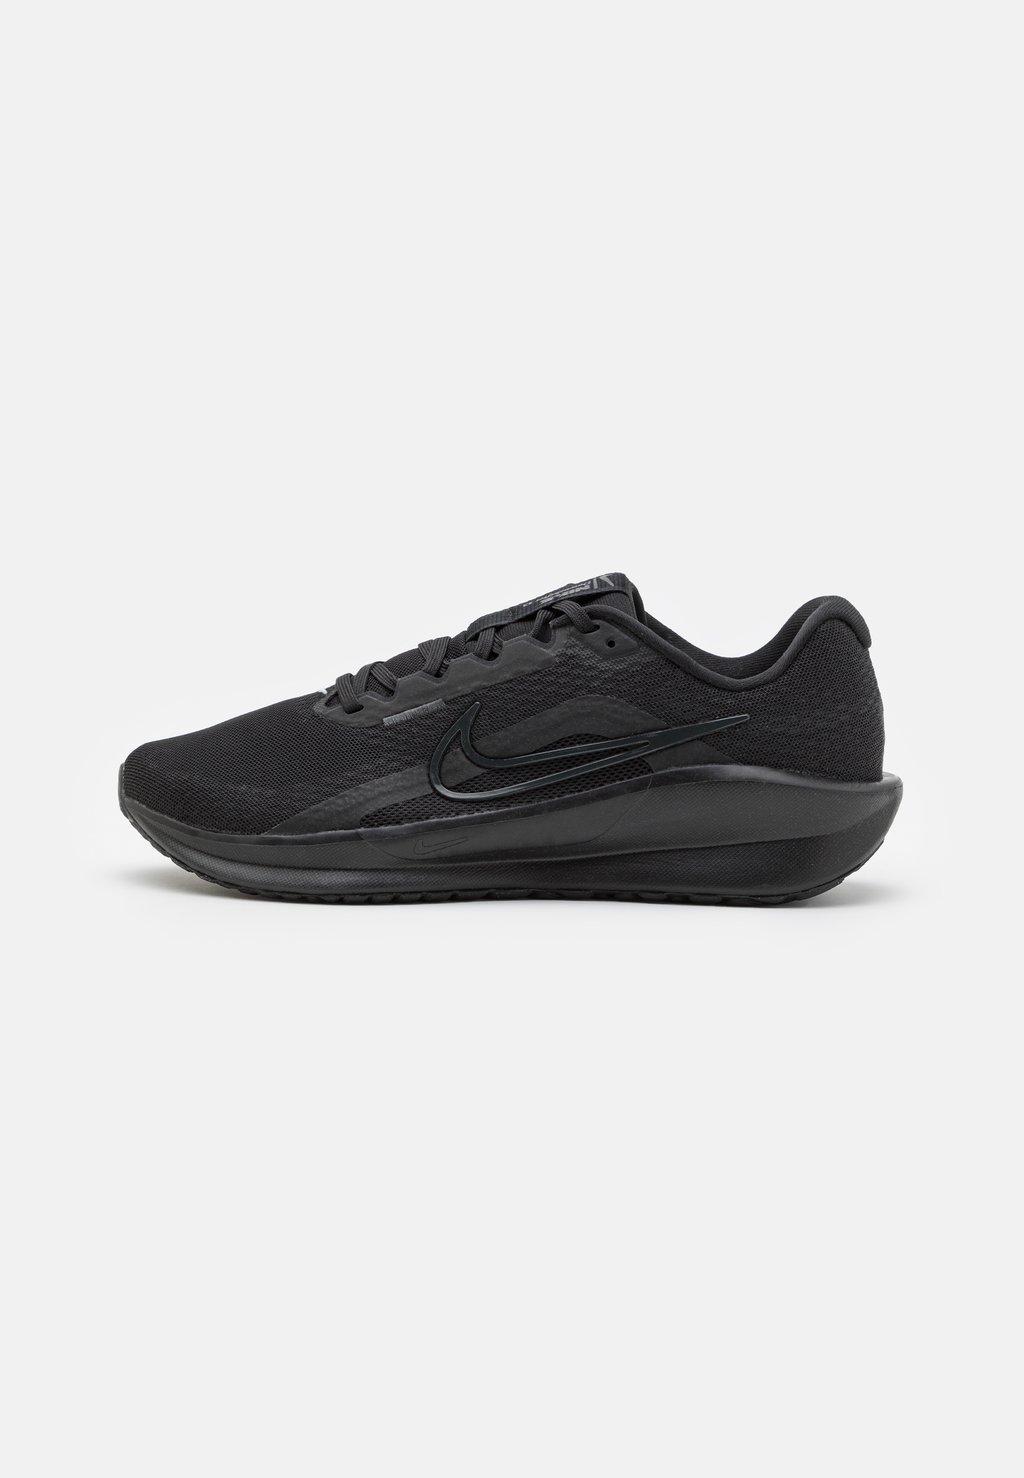 Нейтральные кроссовки Downshifter 13 Nike, цвет anthracite/black/wolf grey